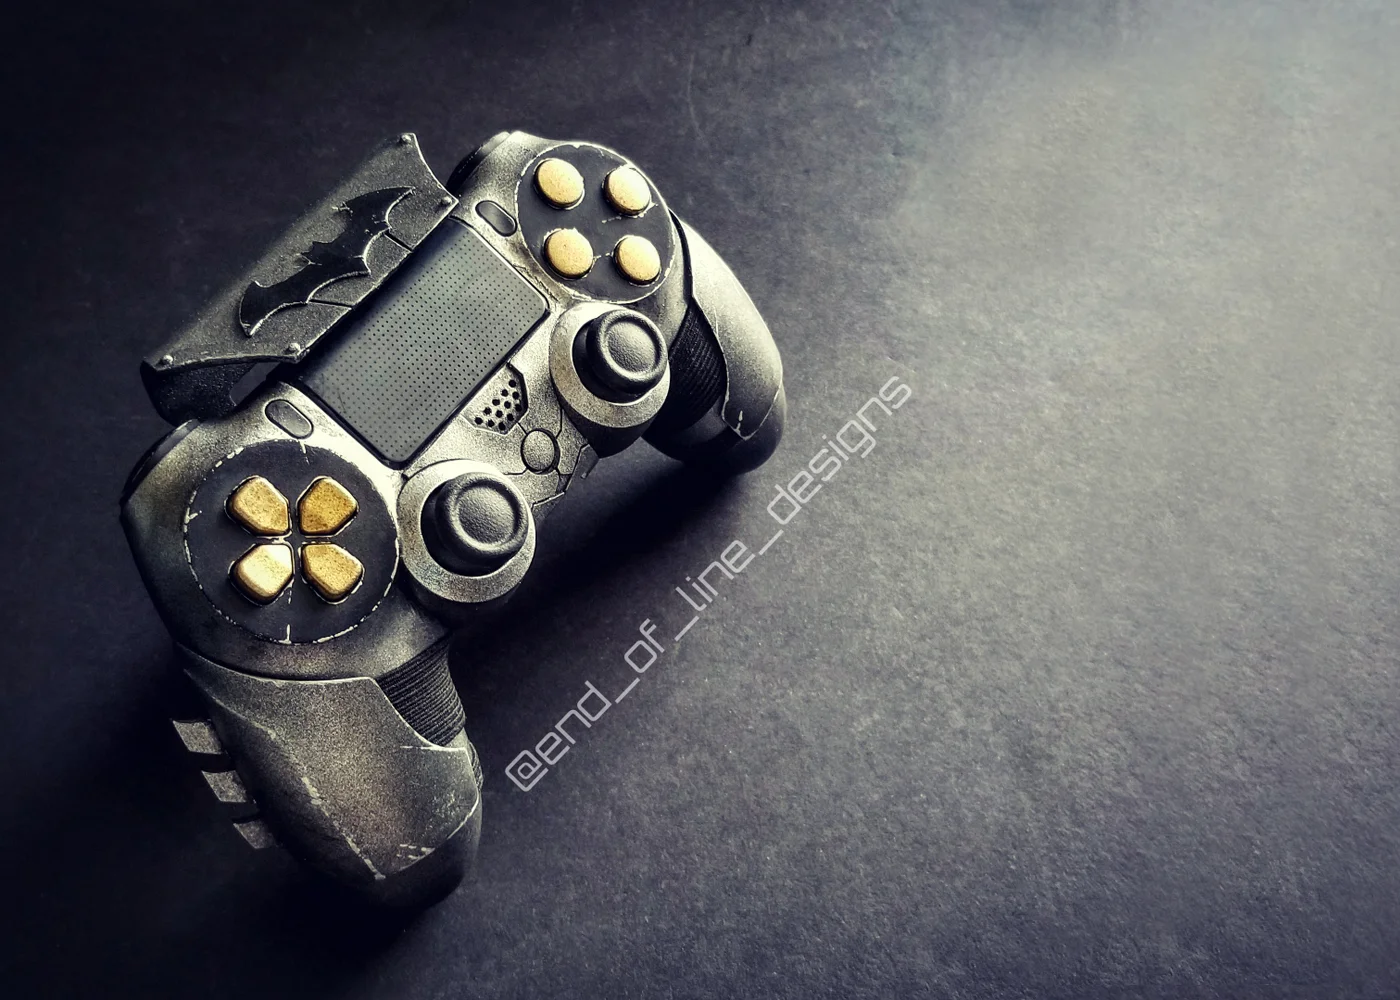 Взгляните на потрясающий контроллер для PS4 в стиле Бэтмена, сделанный вручную - фото 3